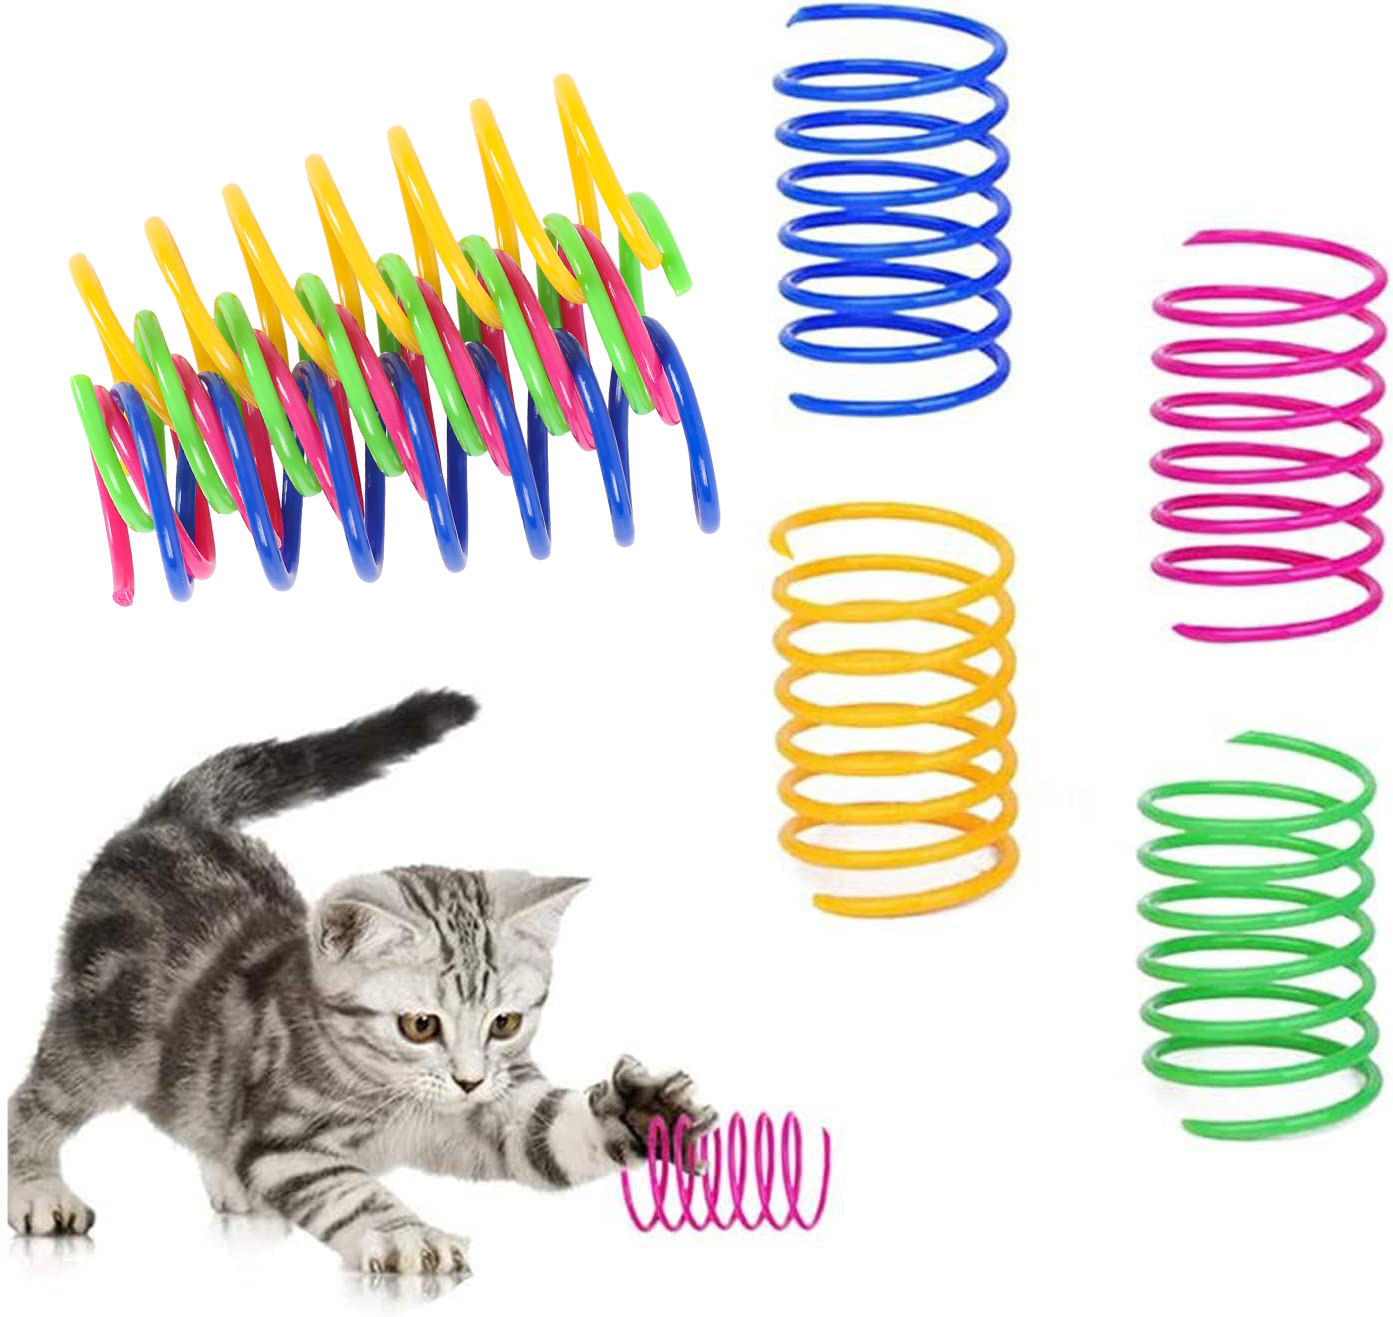 Brinquedo interativo para gatos com mola espiral de plástico durável de 4 pacotes